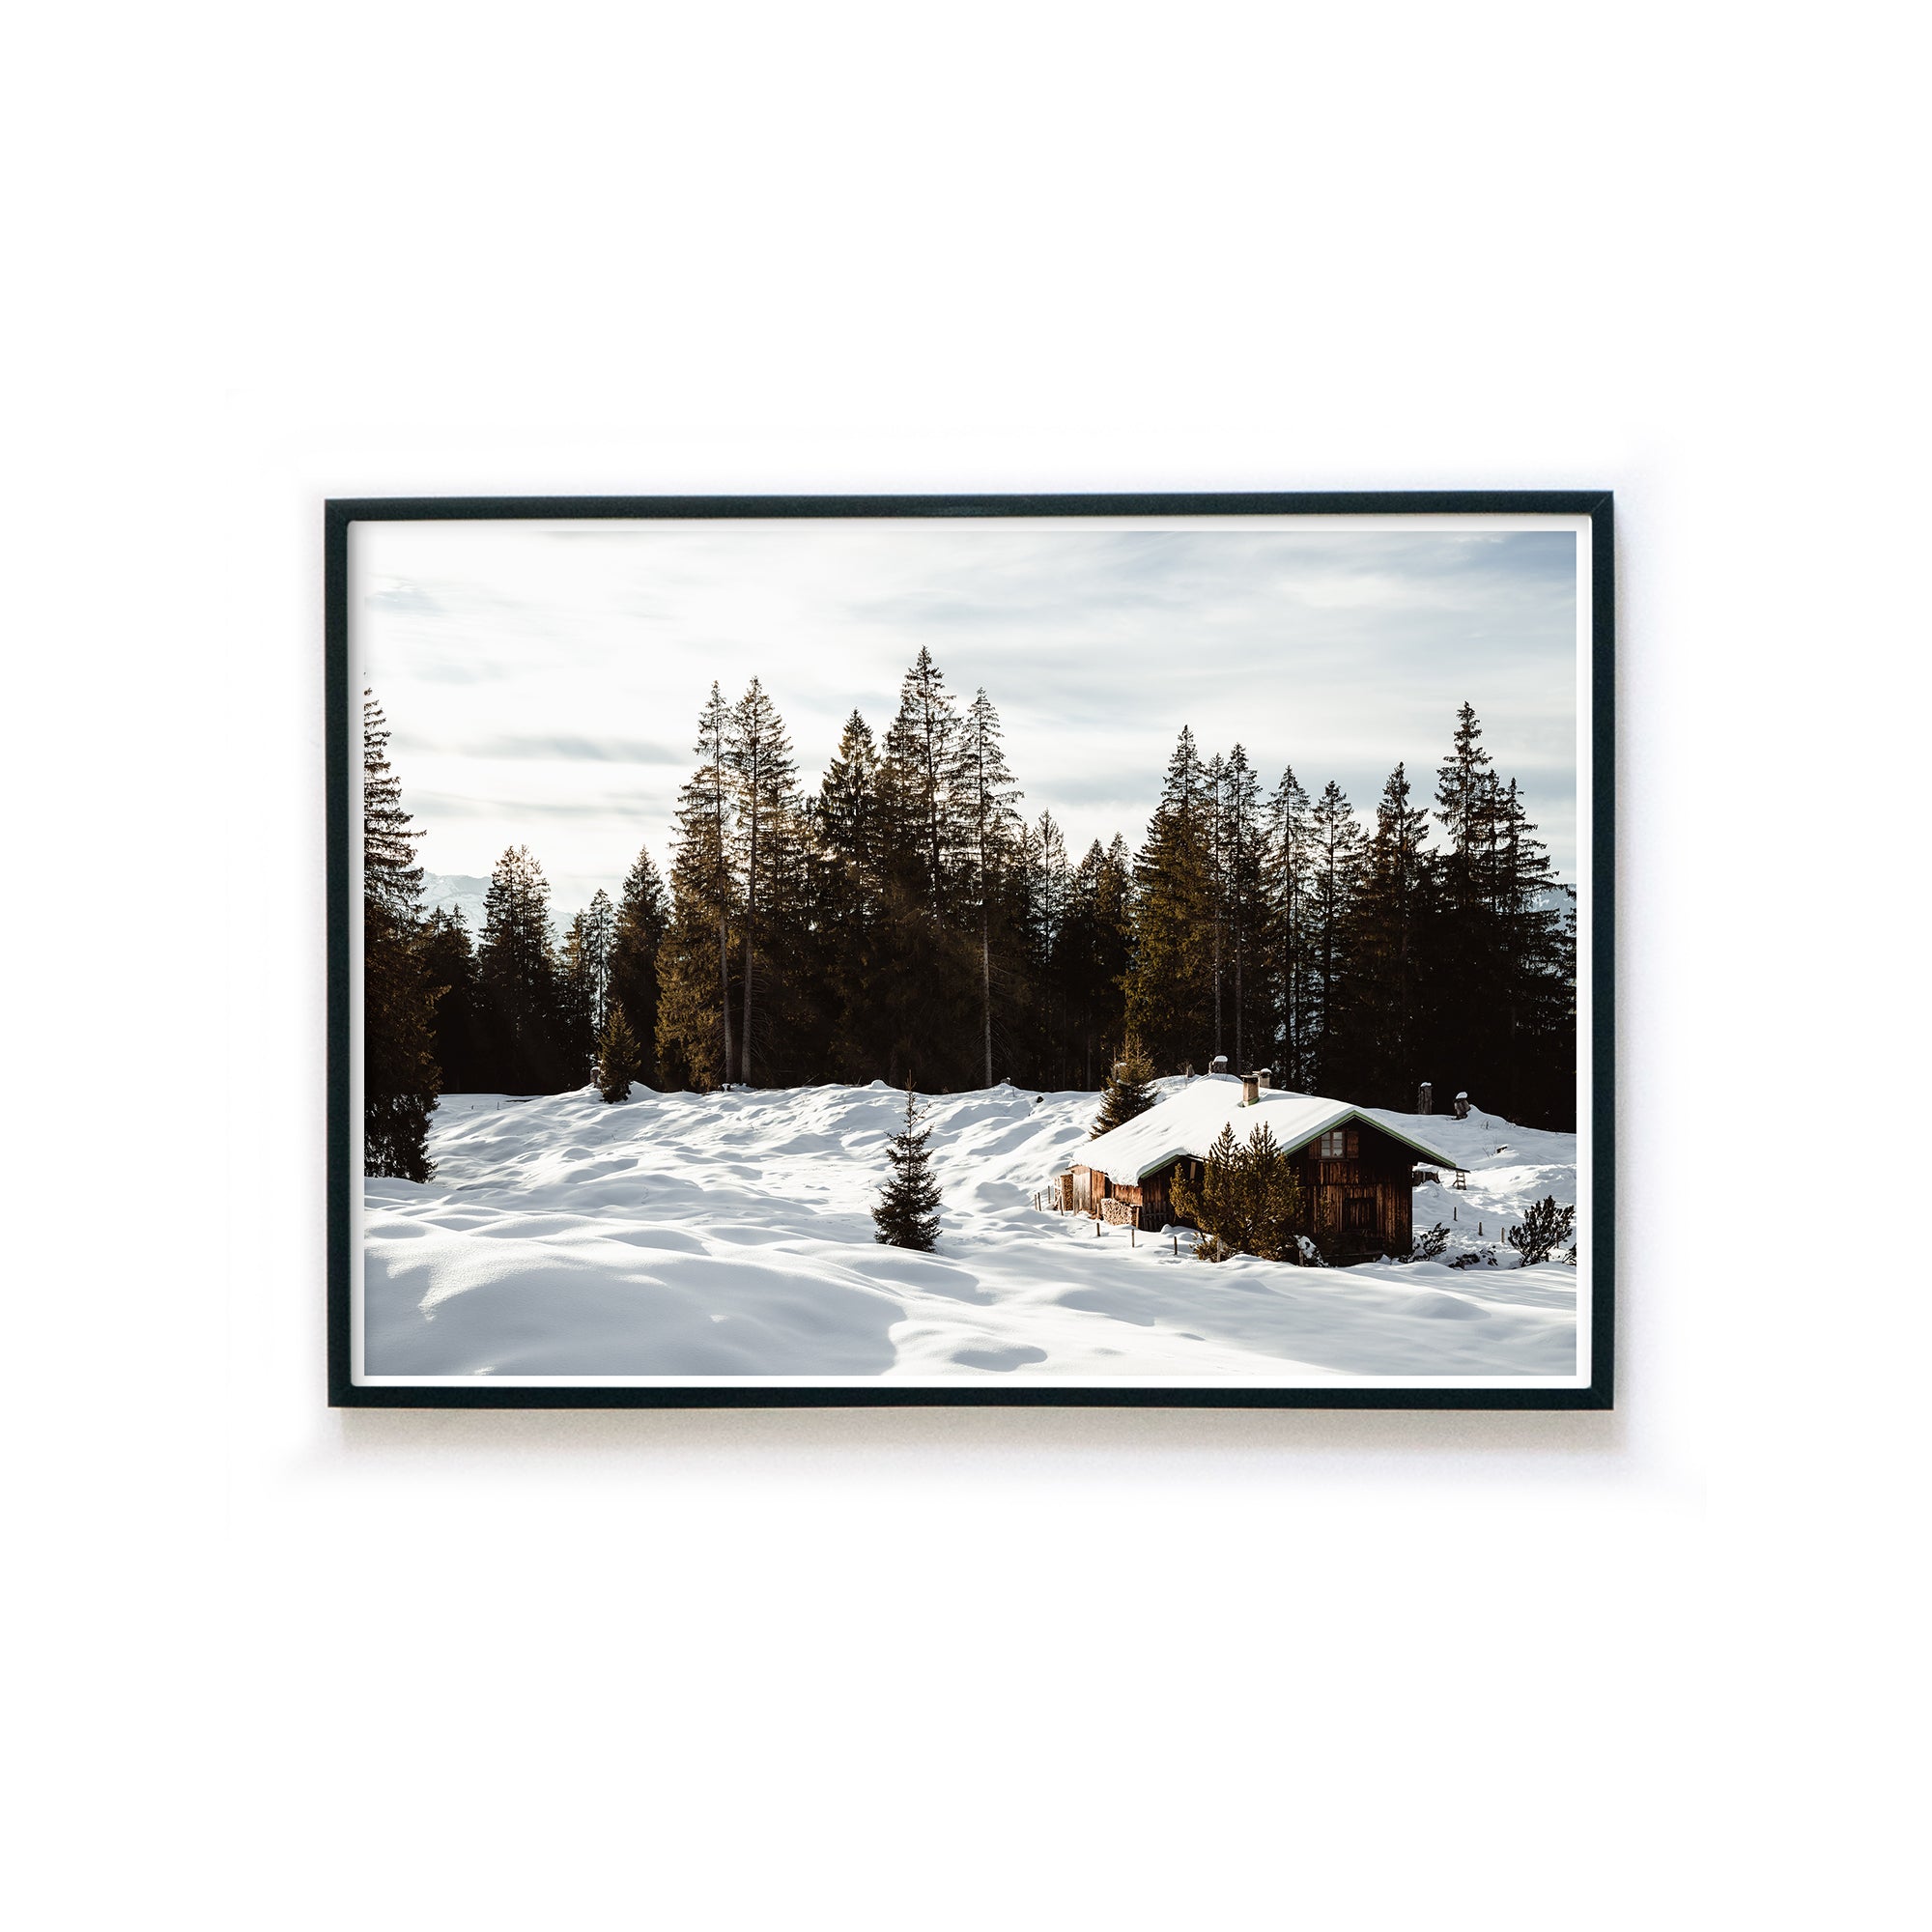 4one-pictures-natur-poster-winter-bild-berg-waelder-wald-schnee-eis-kunstdruck-bilderrahmen-1.jpg